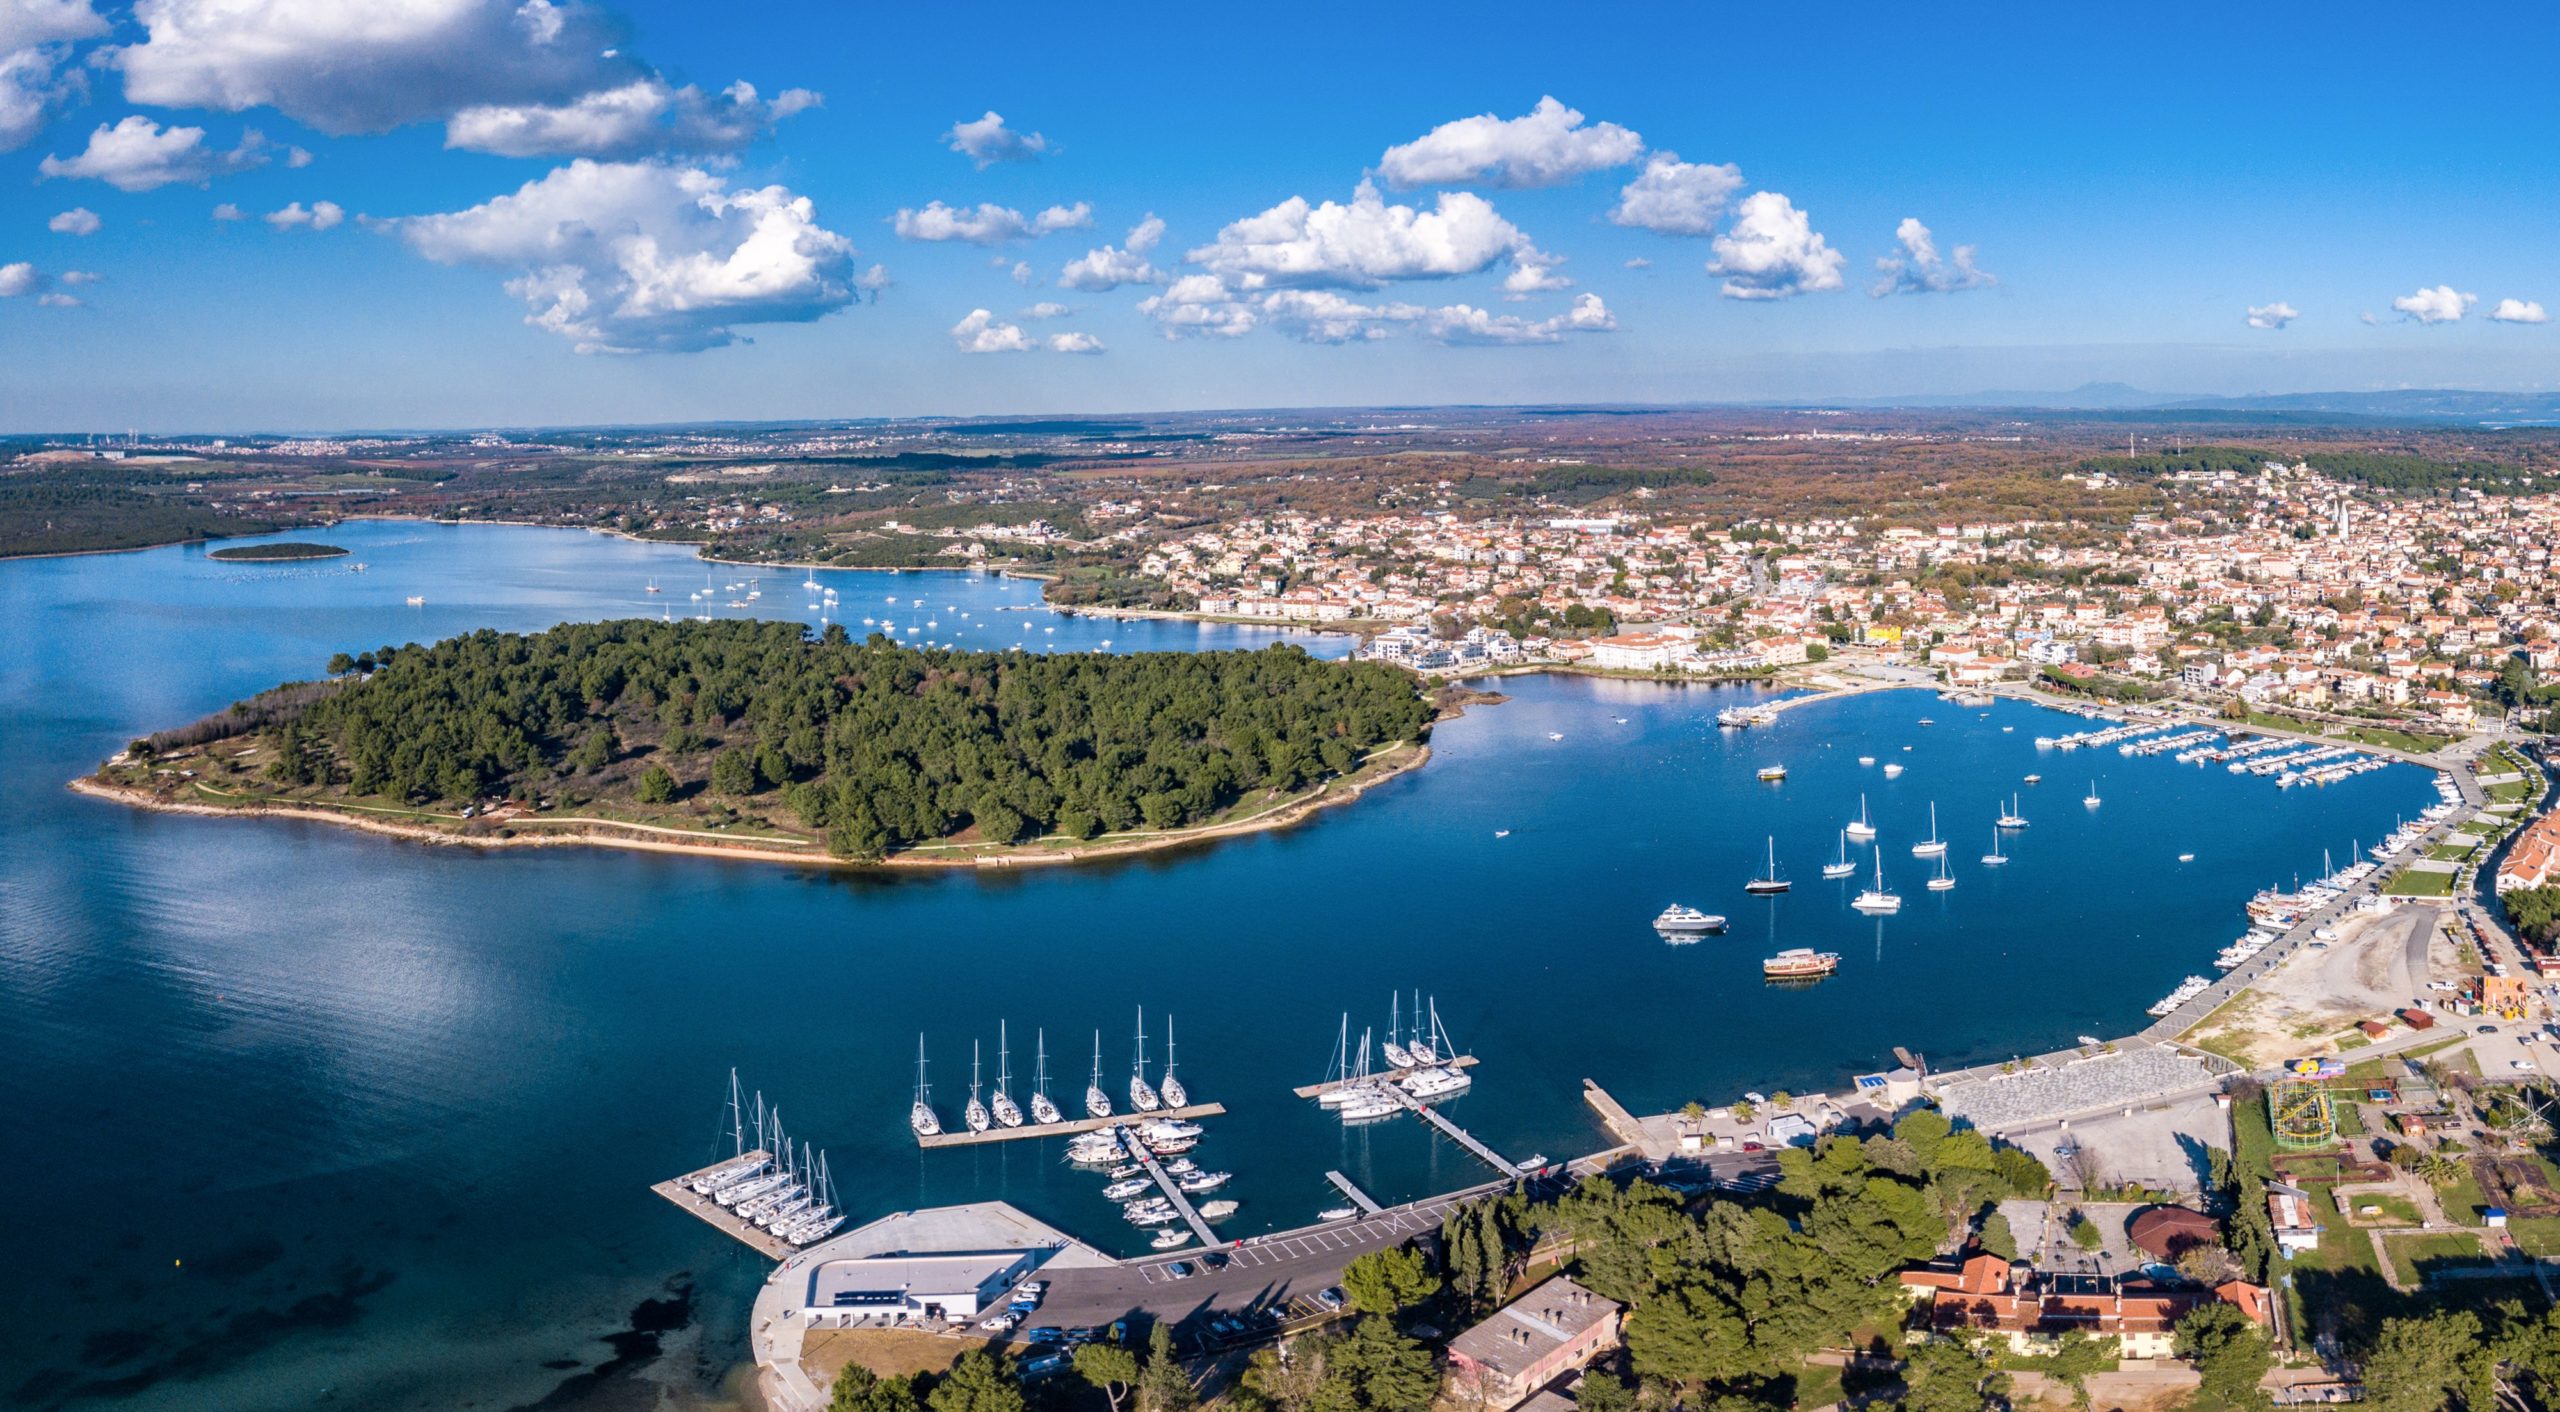 Kroatien aus einer anderen Perspektive: 5 einzigartige Tipps für die Planung einer unterhaltsamen Reise auf See